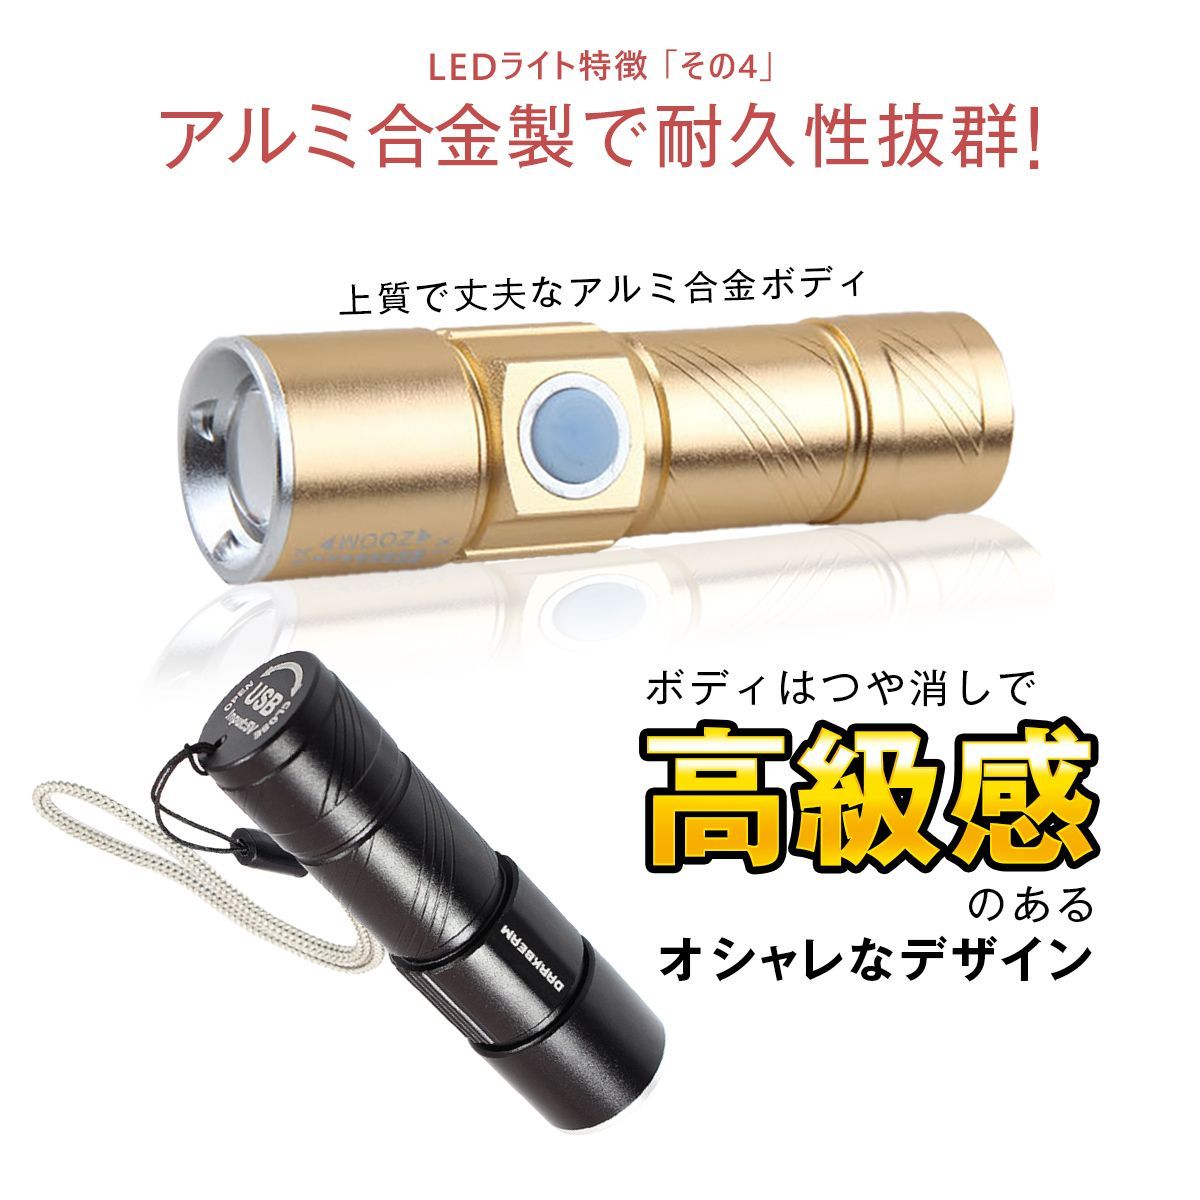 円筒型自転車ライト ゴールド 3段階LED USB充電 防水 ホルダー - 3